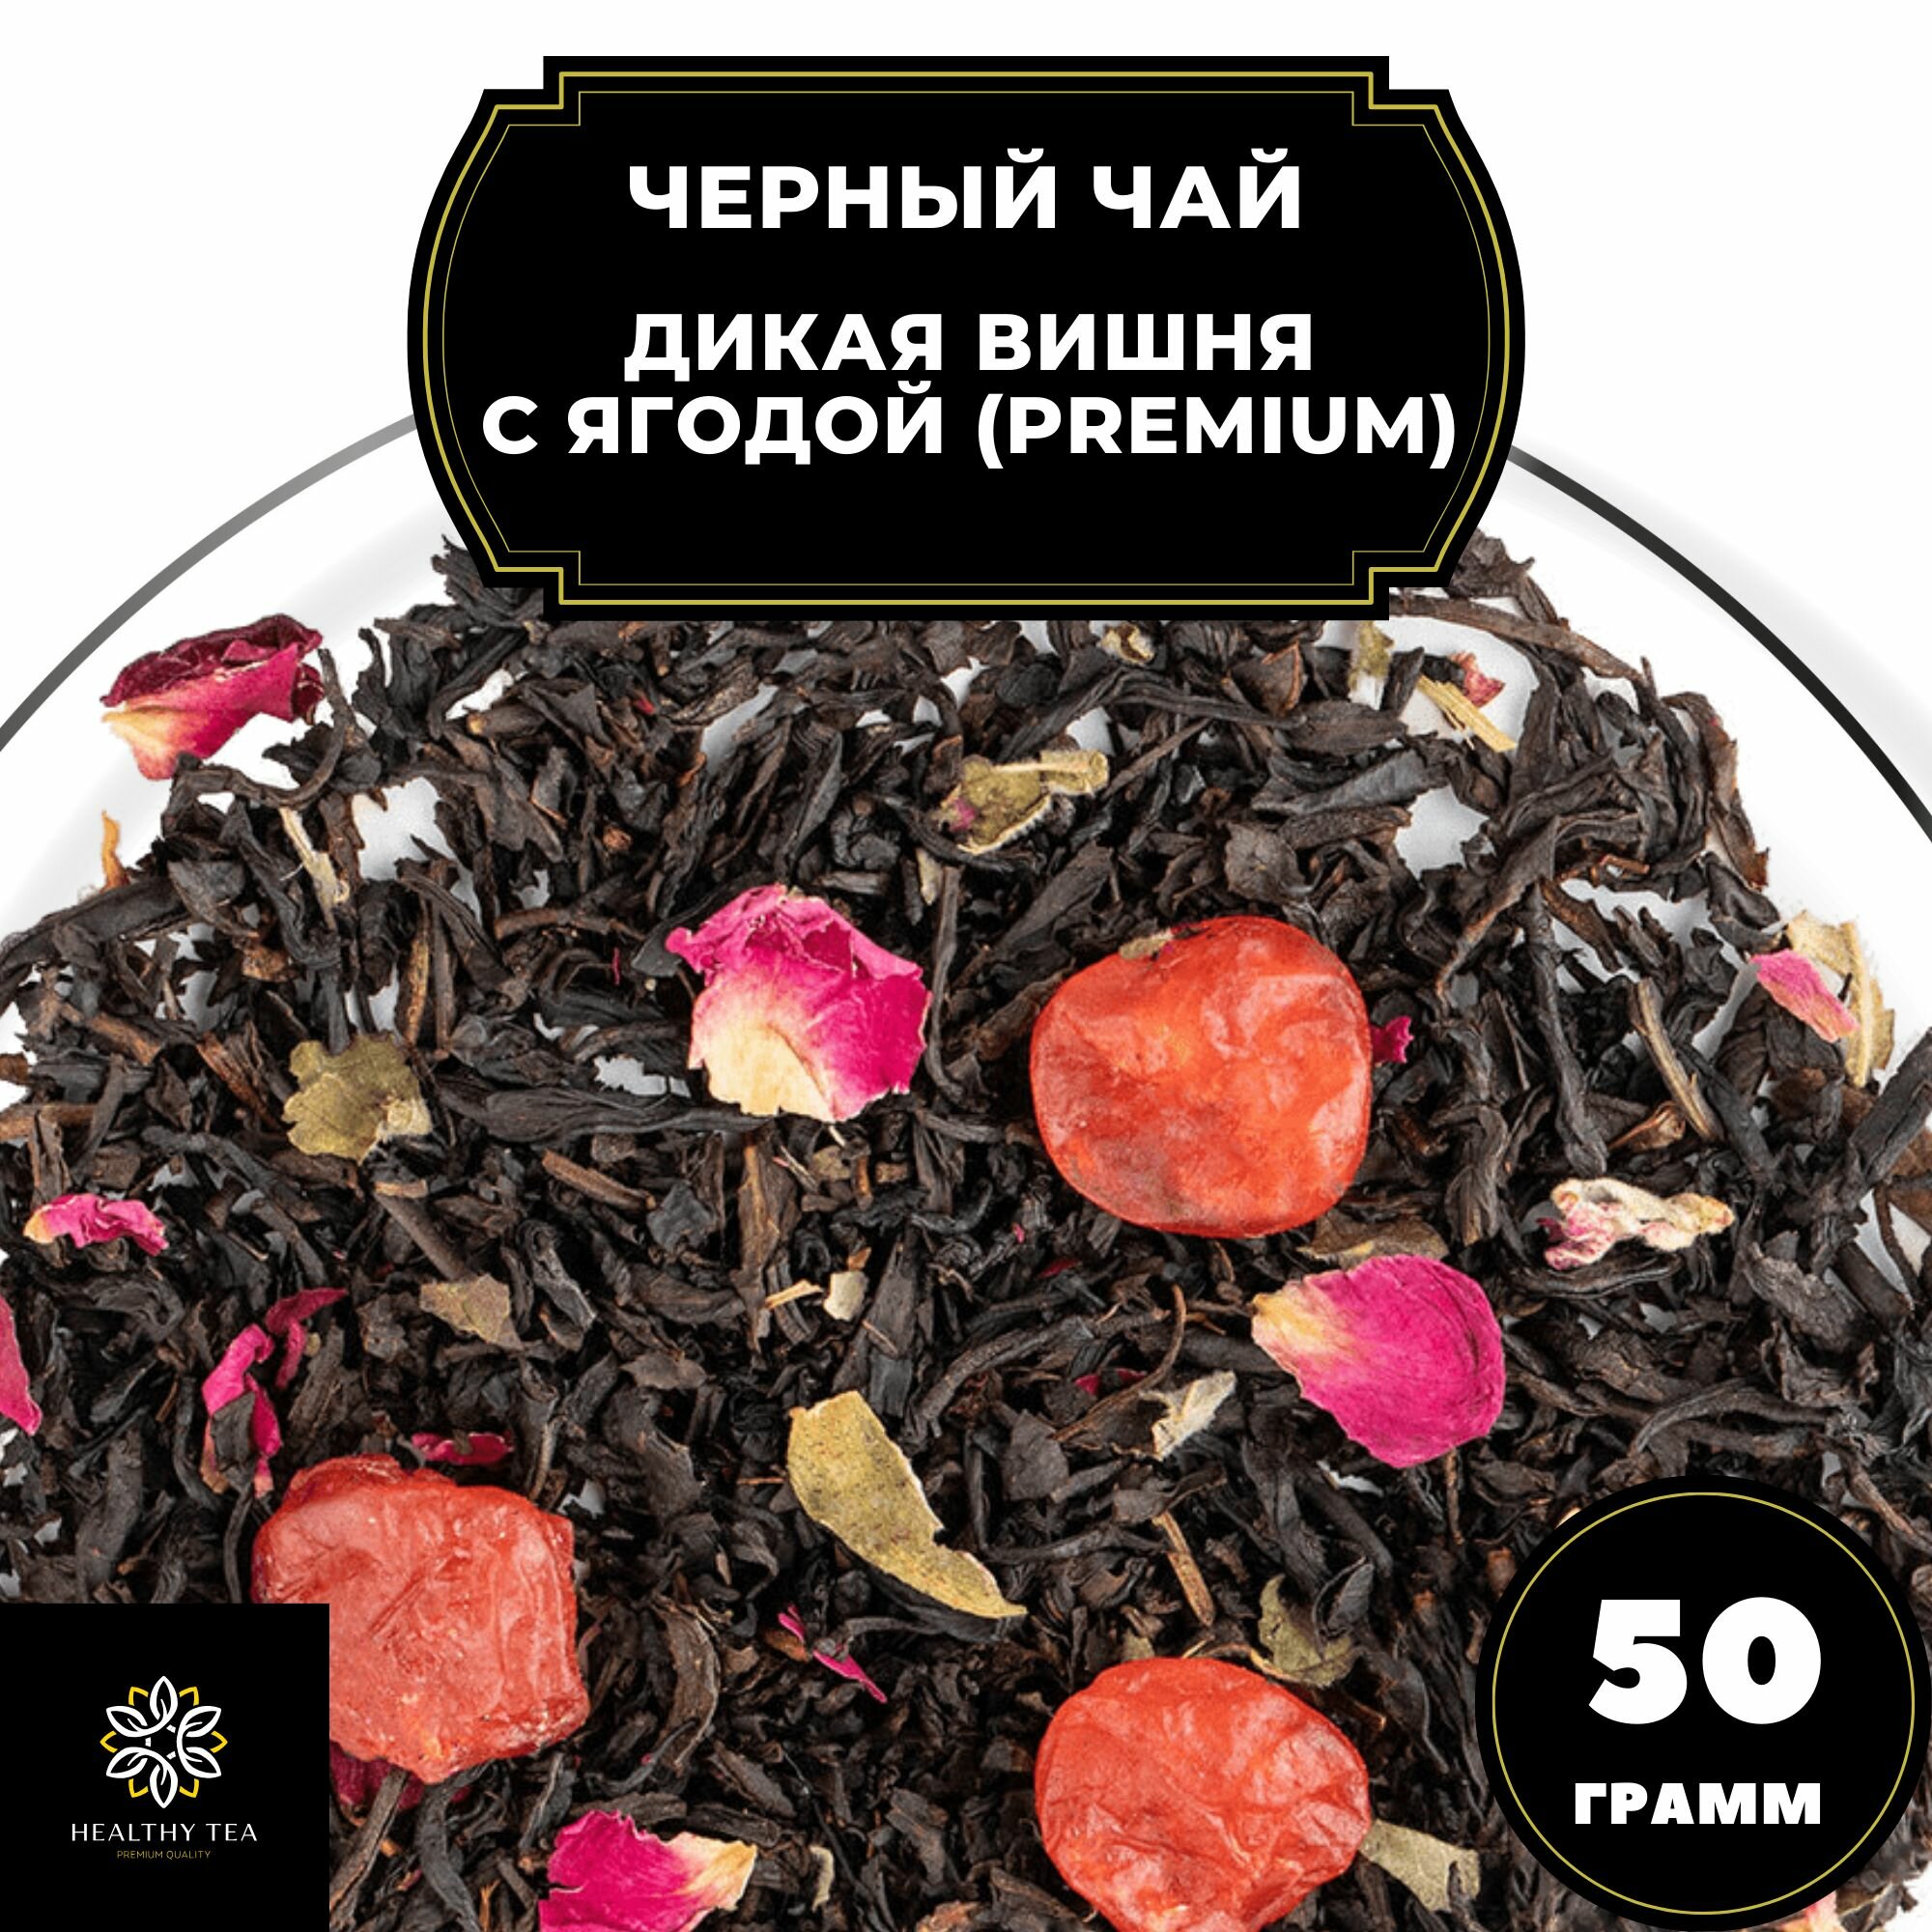 Китайский Черный чай с вишней и розой "Дикая вишня с ягодой" (Premium) Полезный чай / HEALTHY TEA, 50 гр